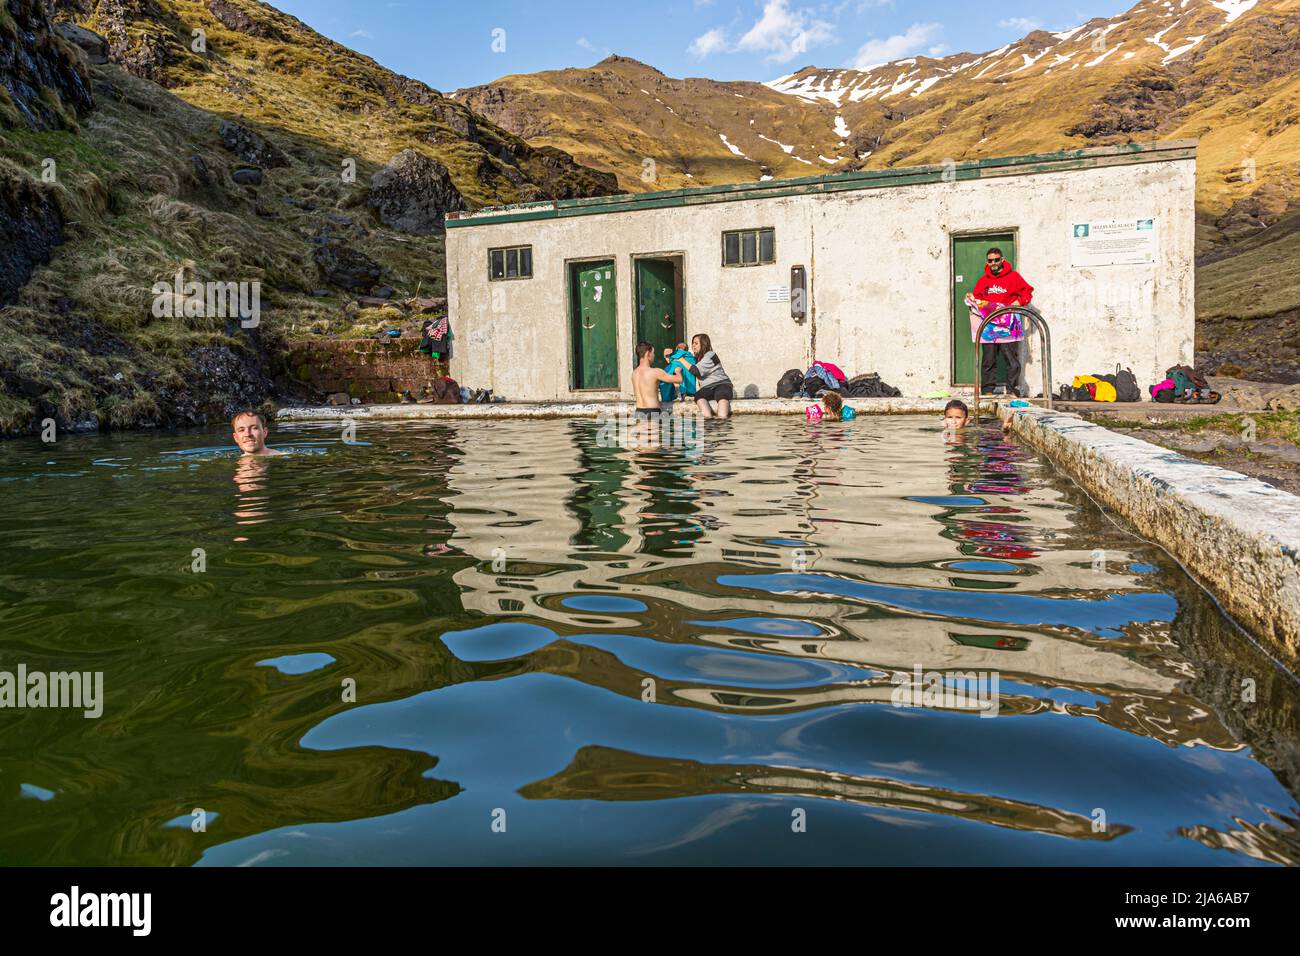 Seljavellir Geothermal Pool, Iceland Stock Photo